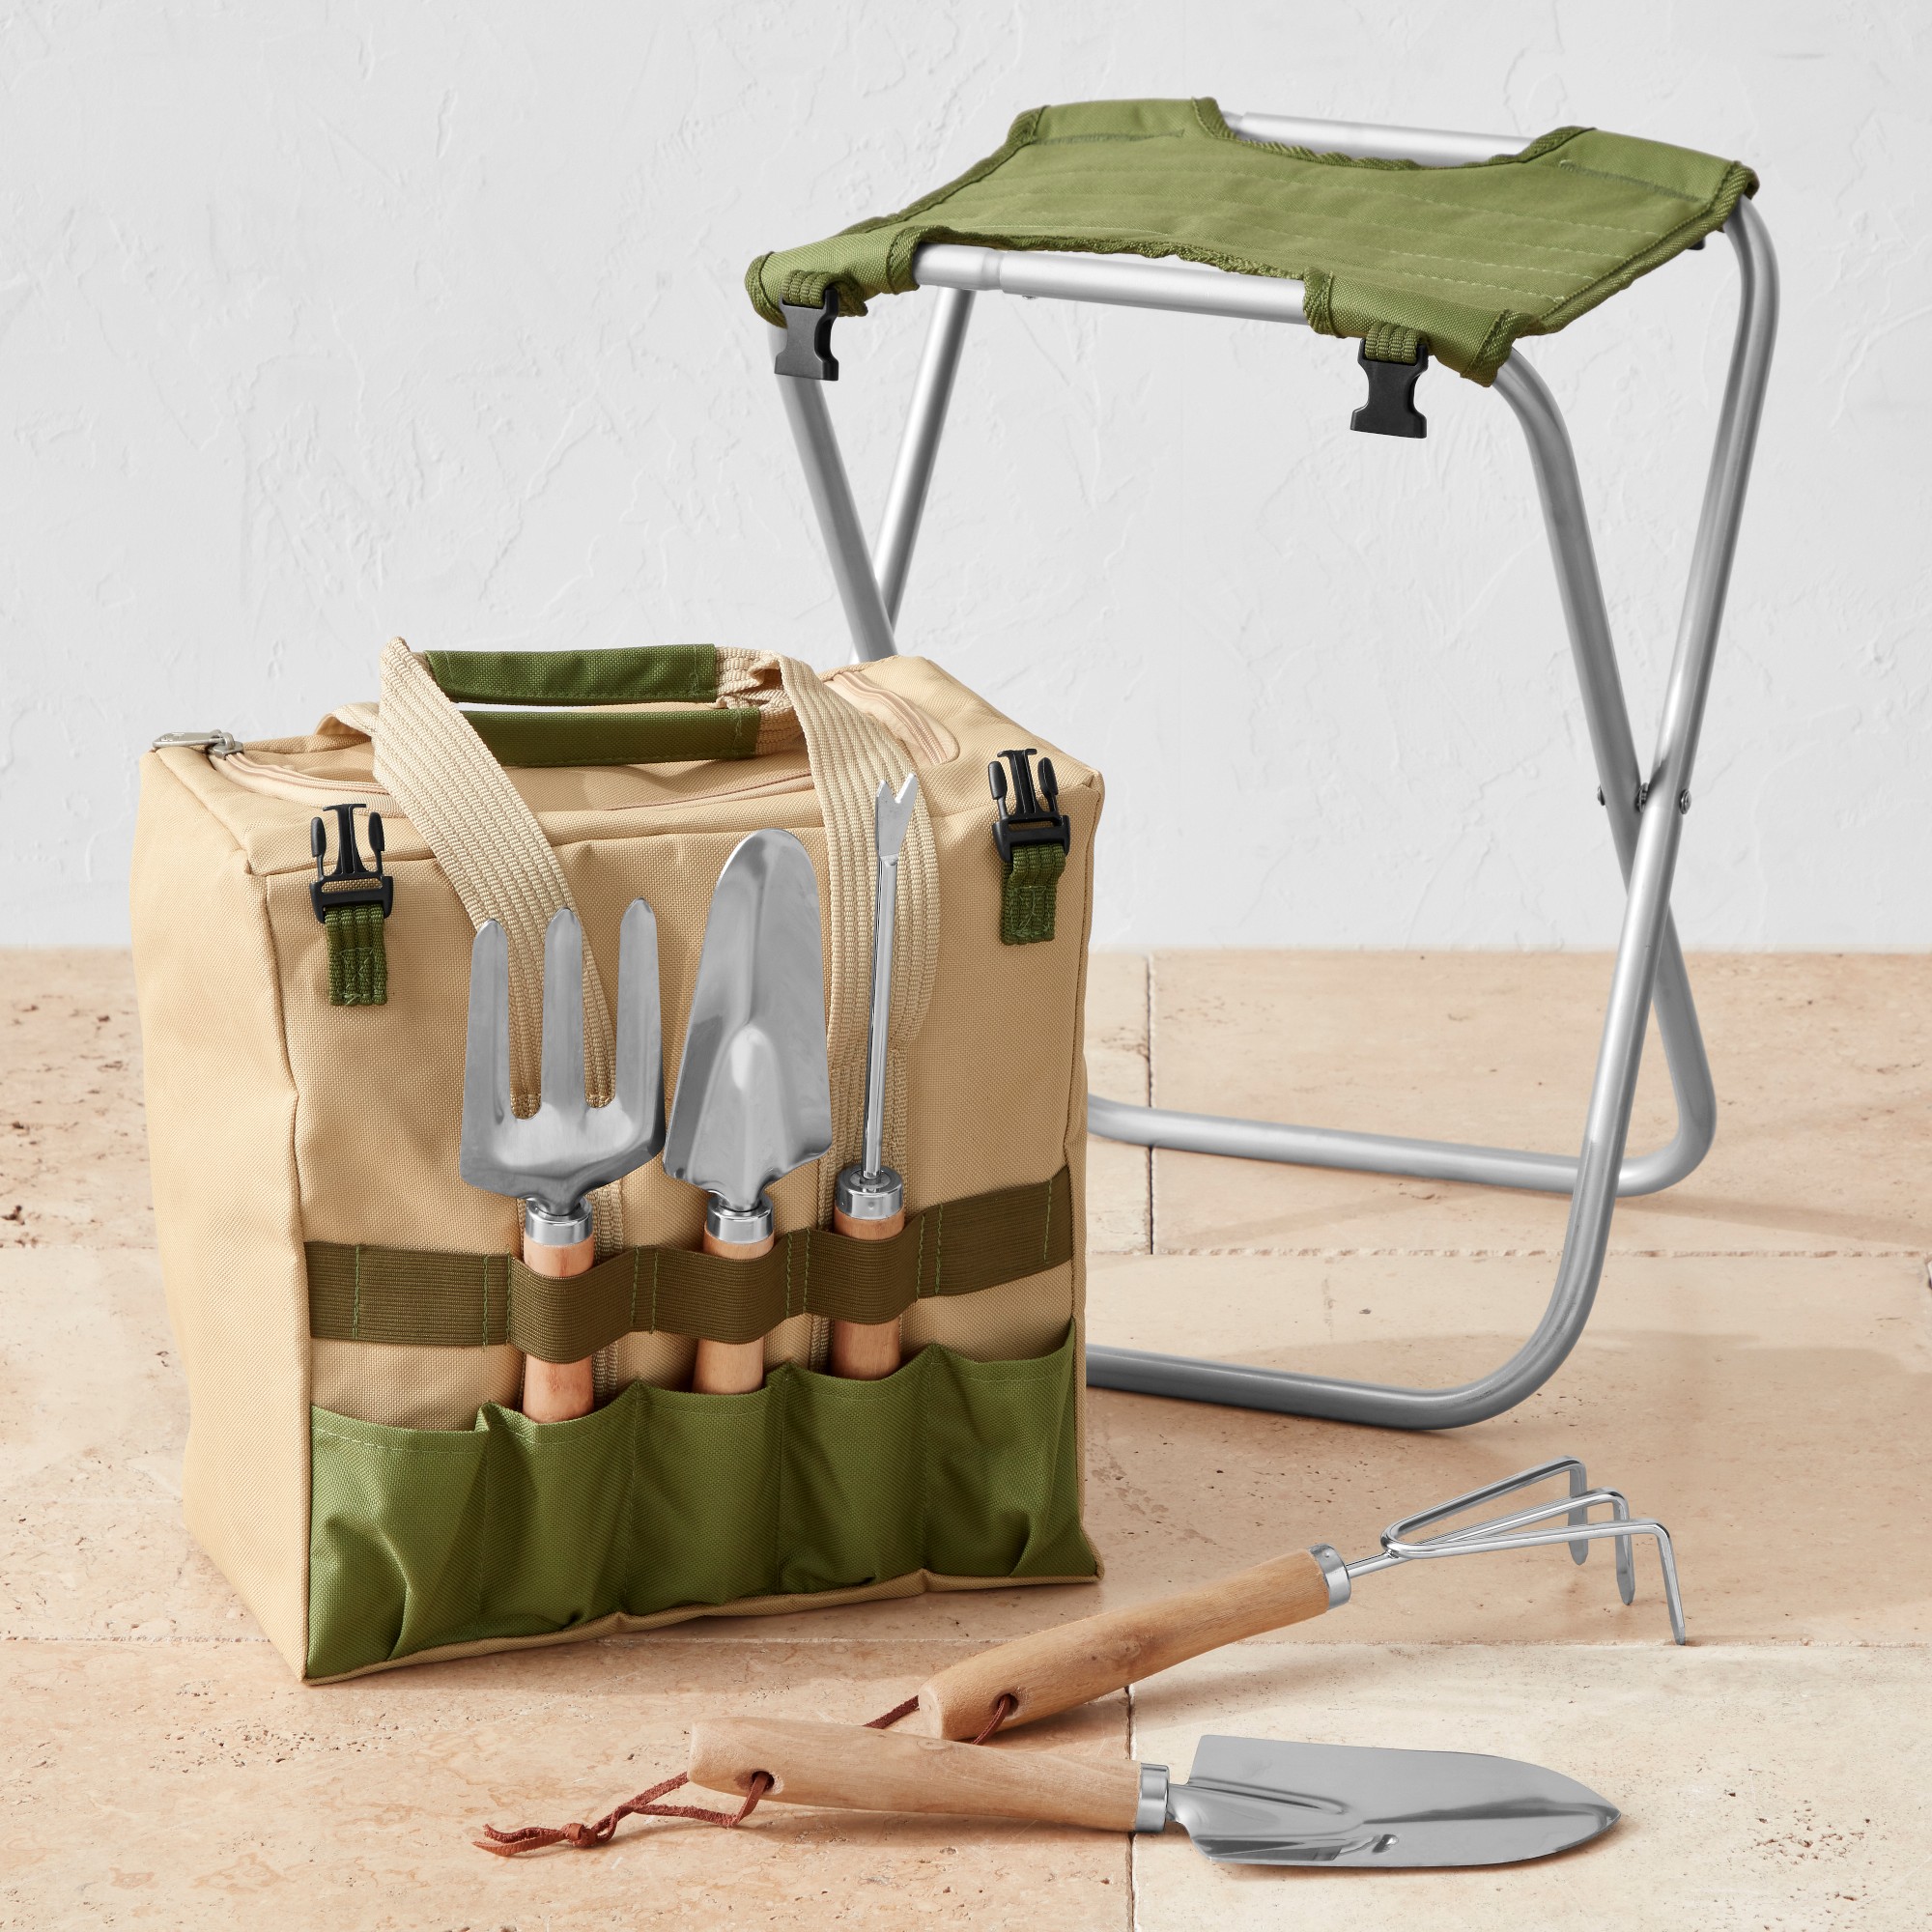 Gardening Seat & Tool Kit